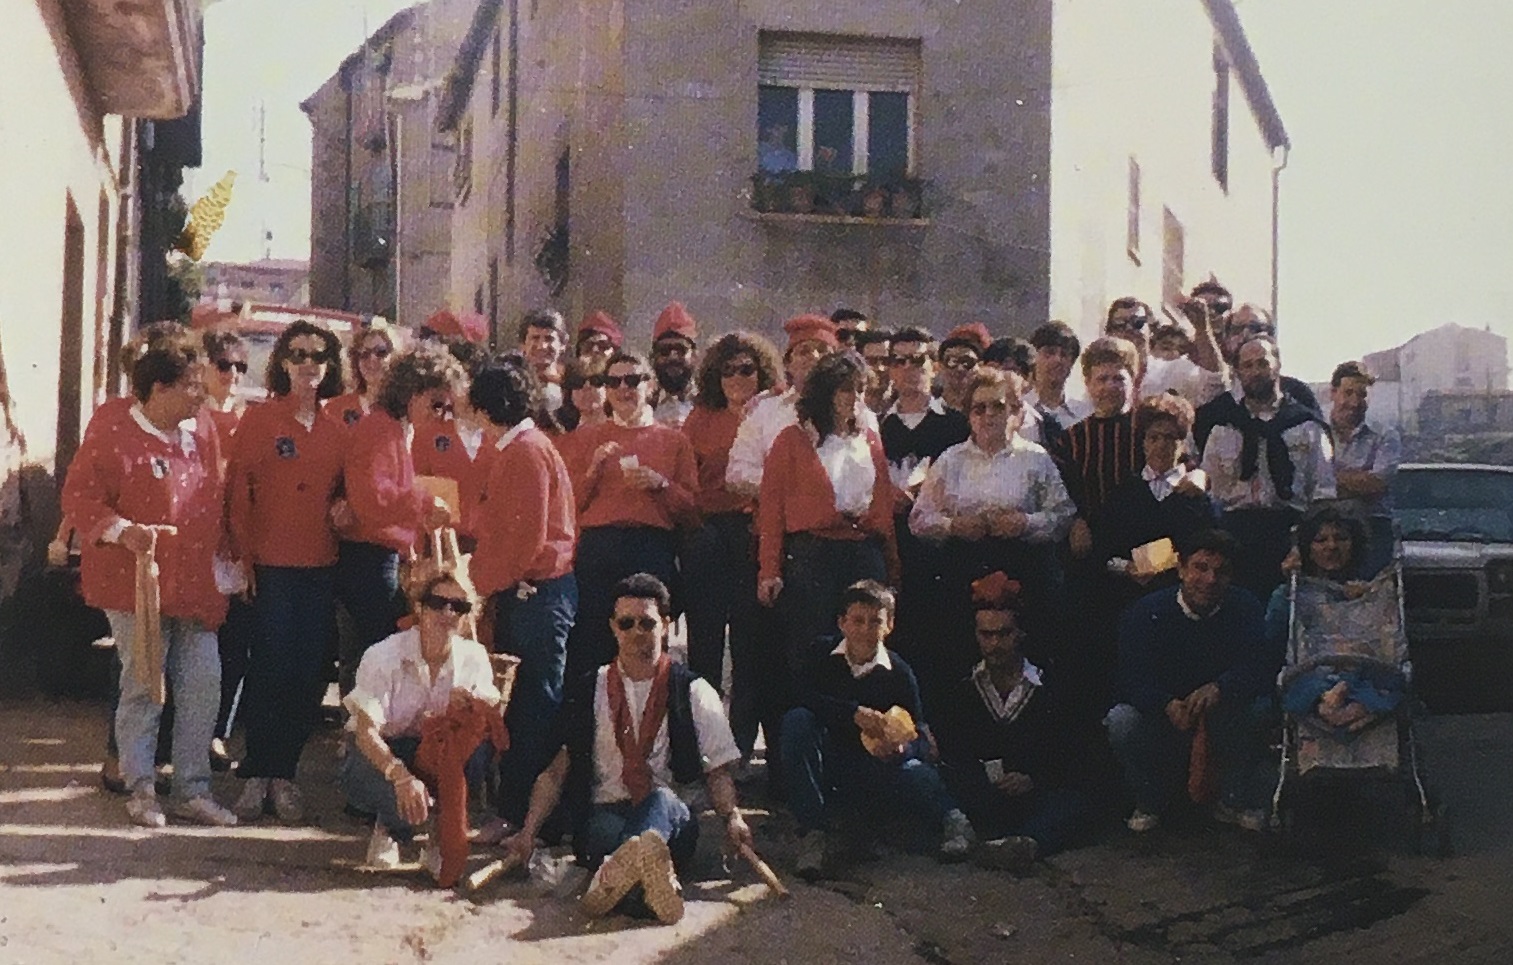 DÃ¨cada de 1980 - Colla caramellaire de l'AgrupaciÃ³ PiragÃ¼Ã itica (font: llibre 'Les Caramelles de SÃºria' de NÃºria Balaguer i Riera).